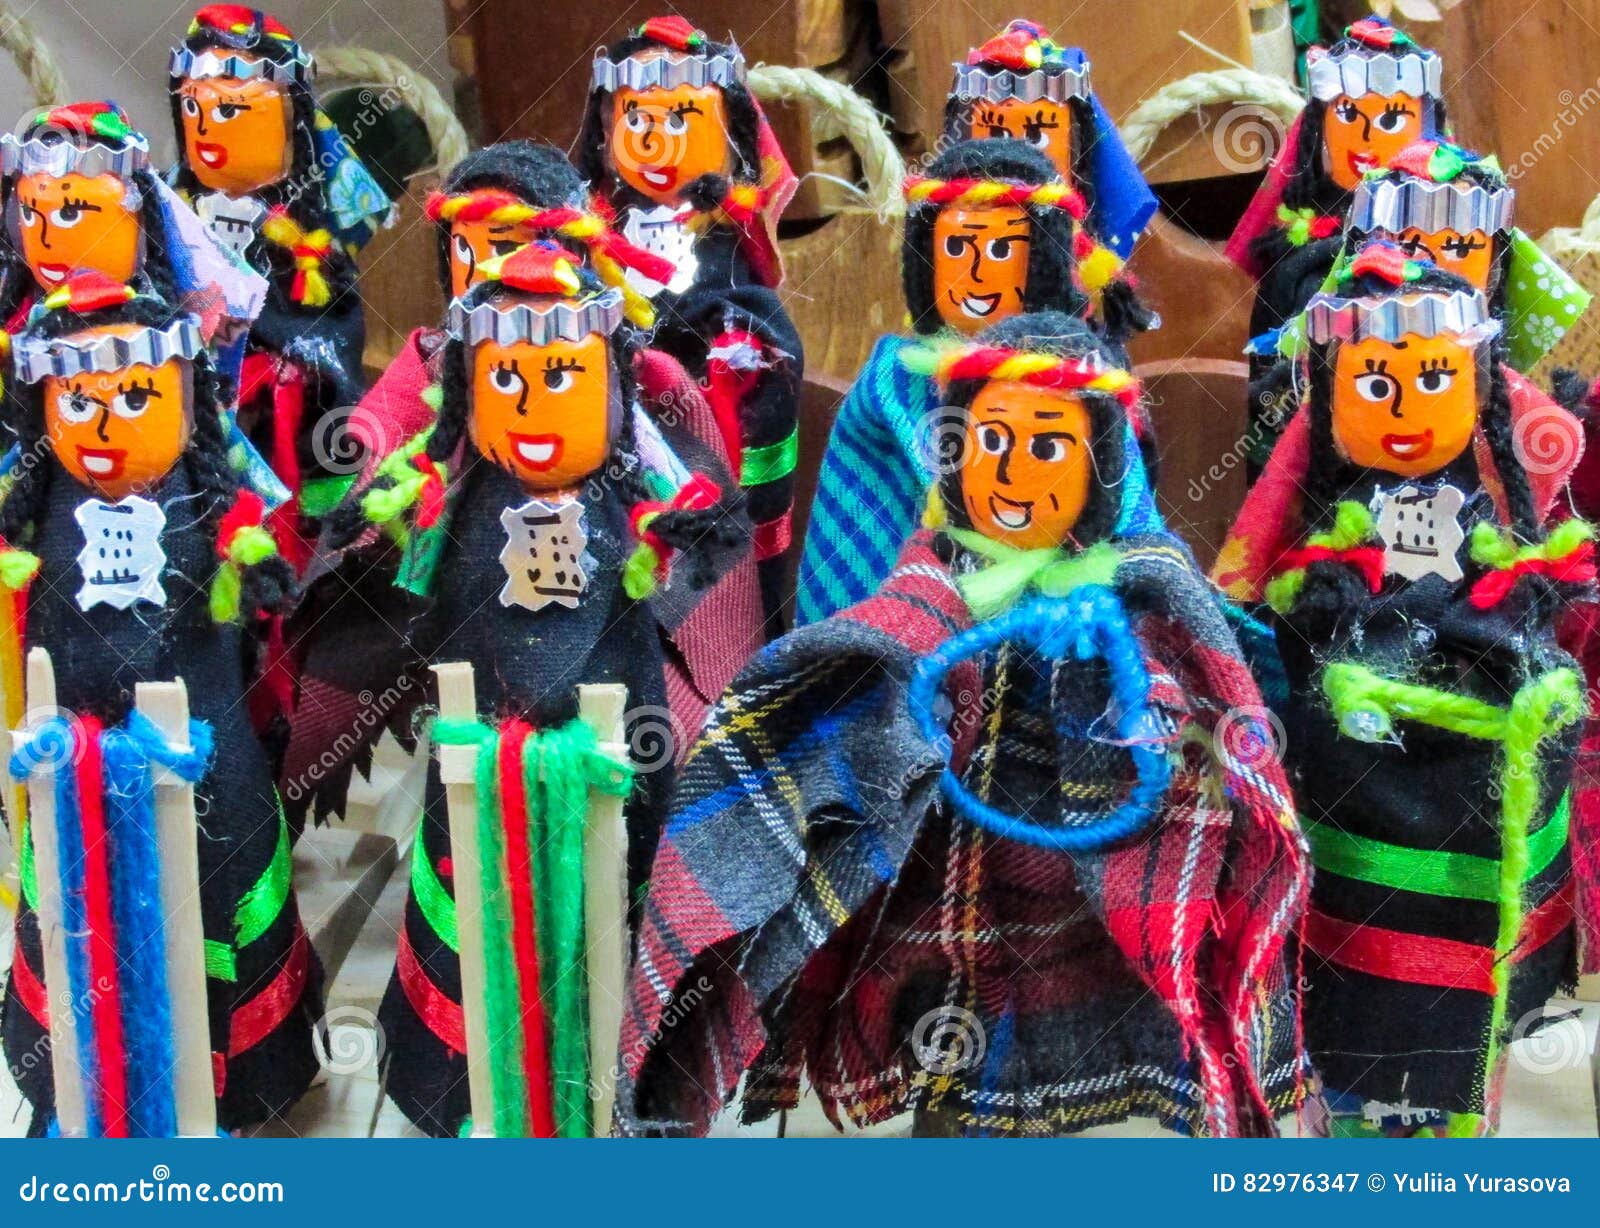 dolls at mercado de las brujas in bolivia